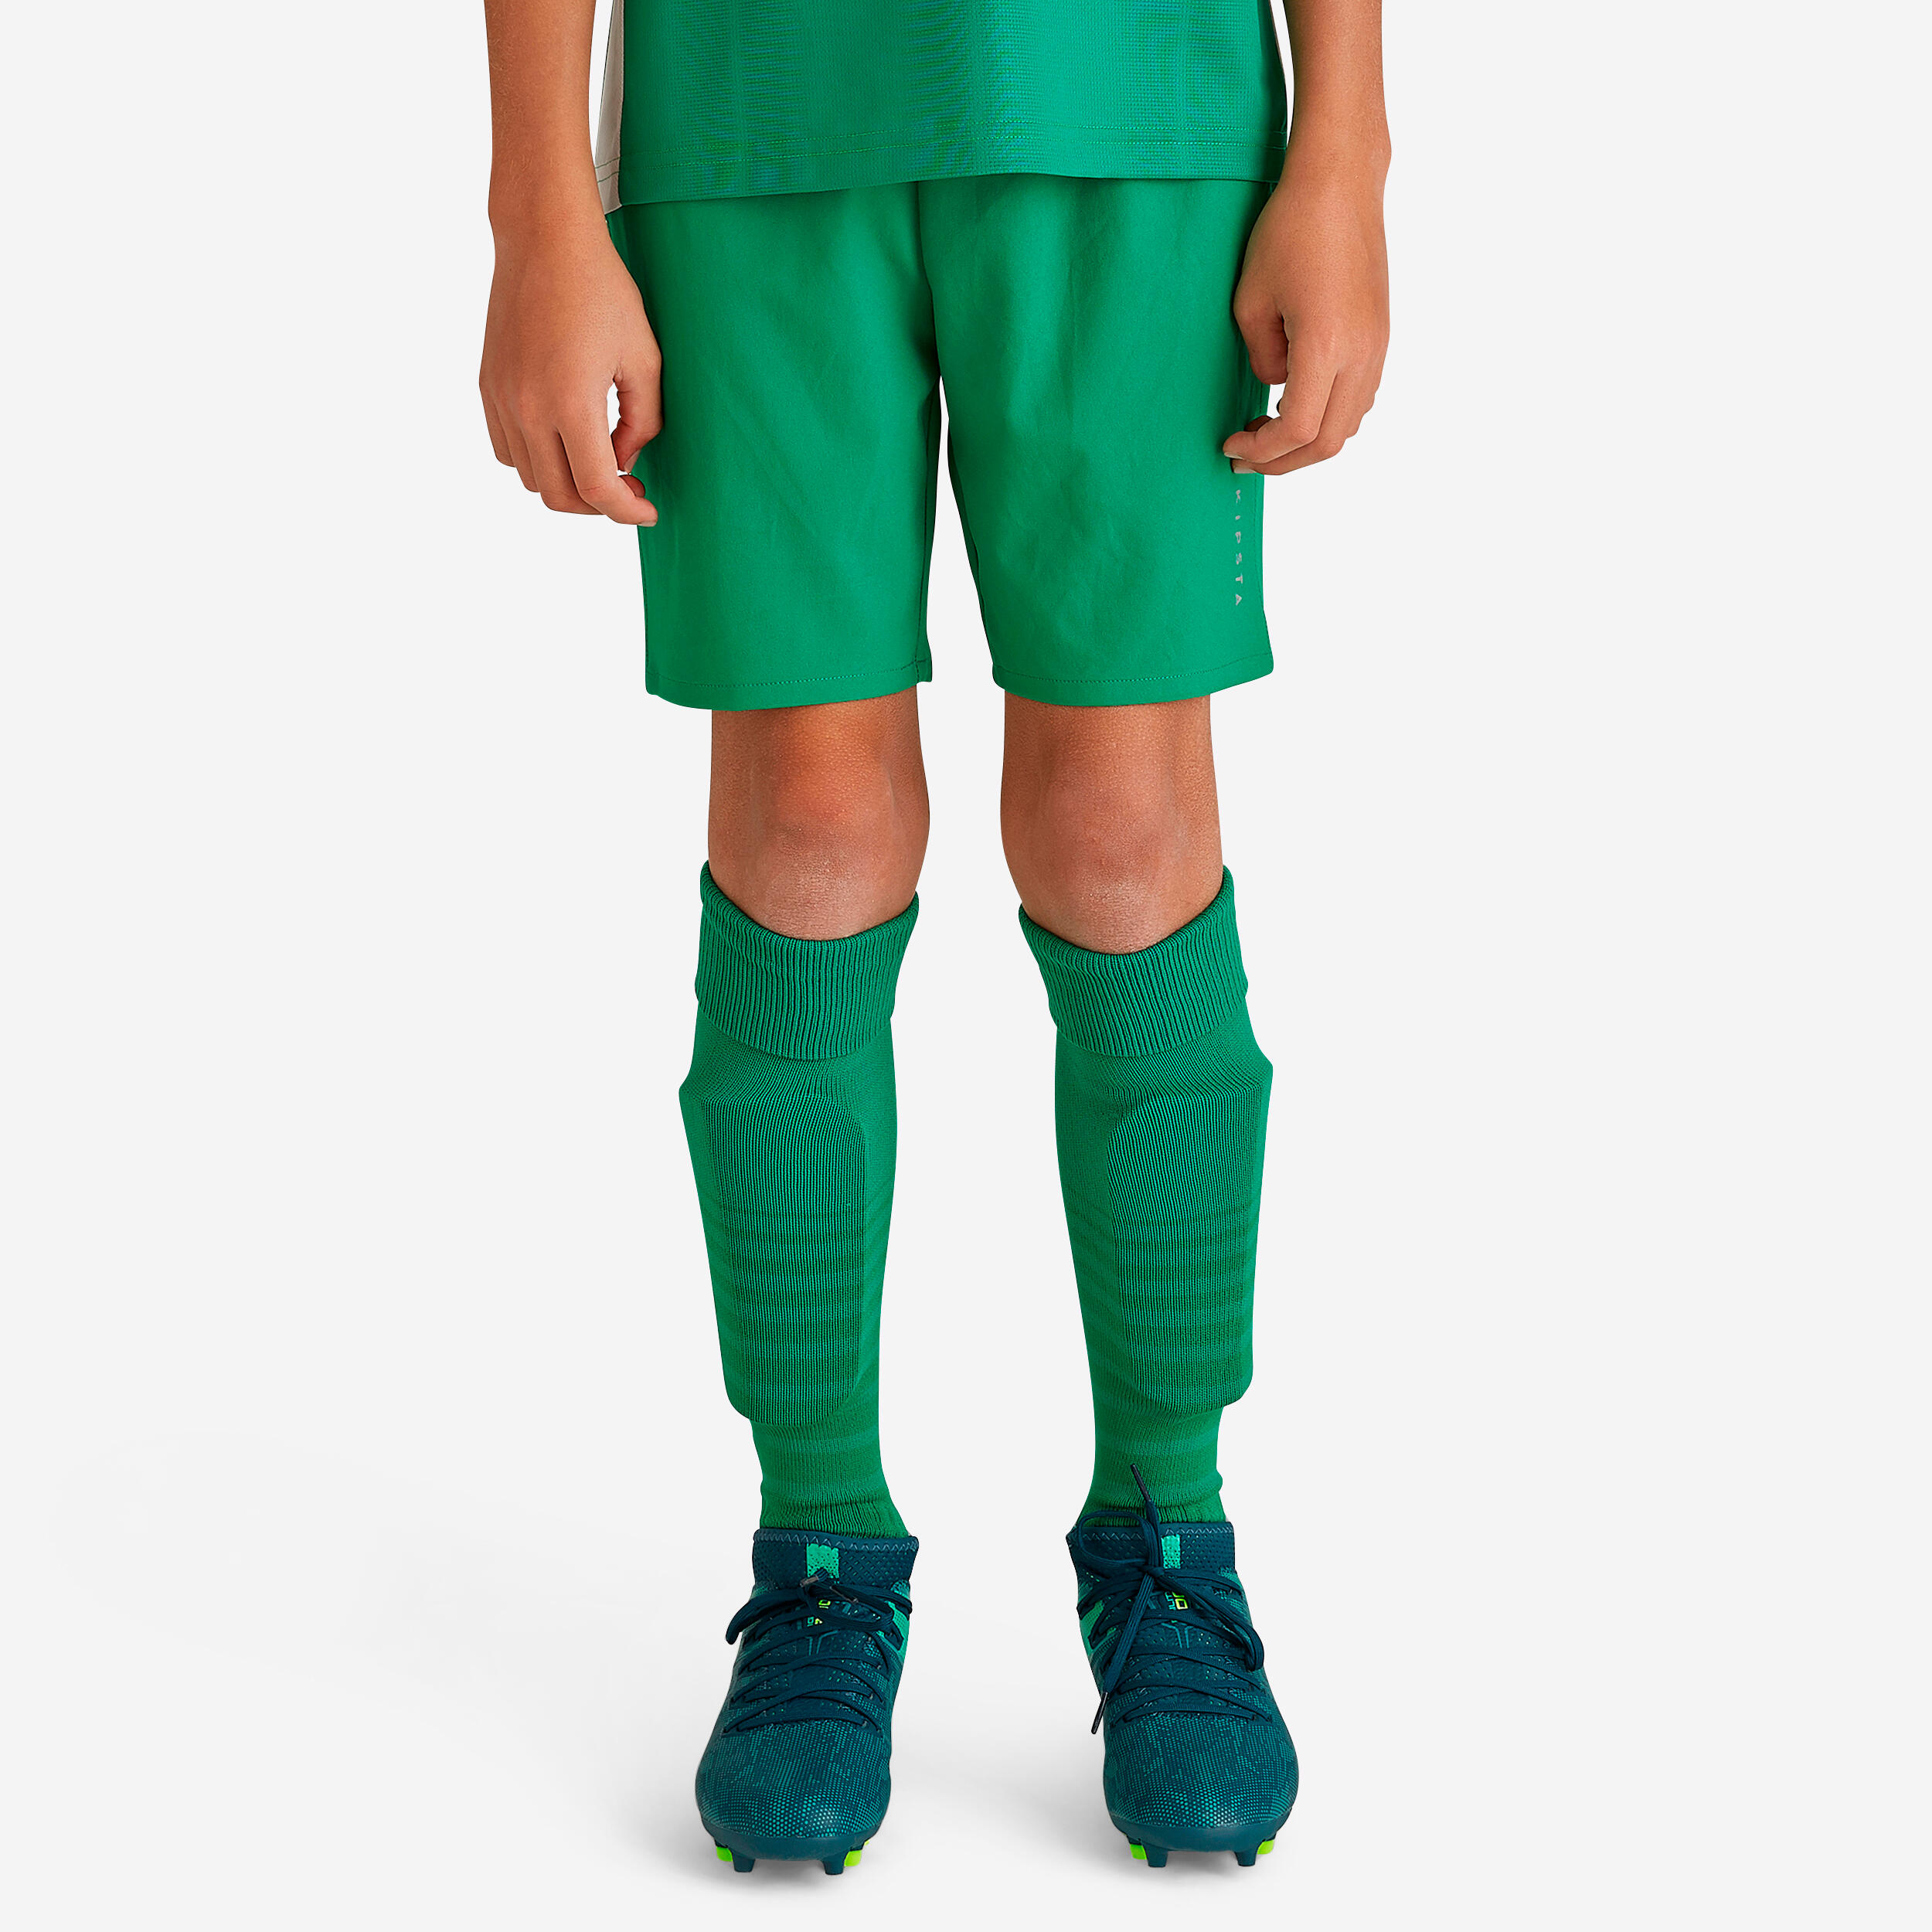 Kinder Fussball Shorts VIRALTO grün